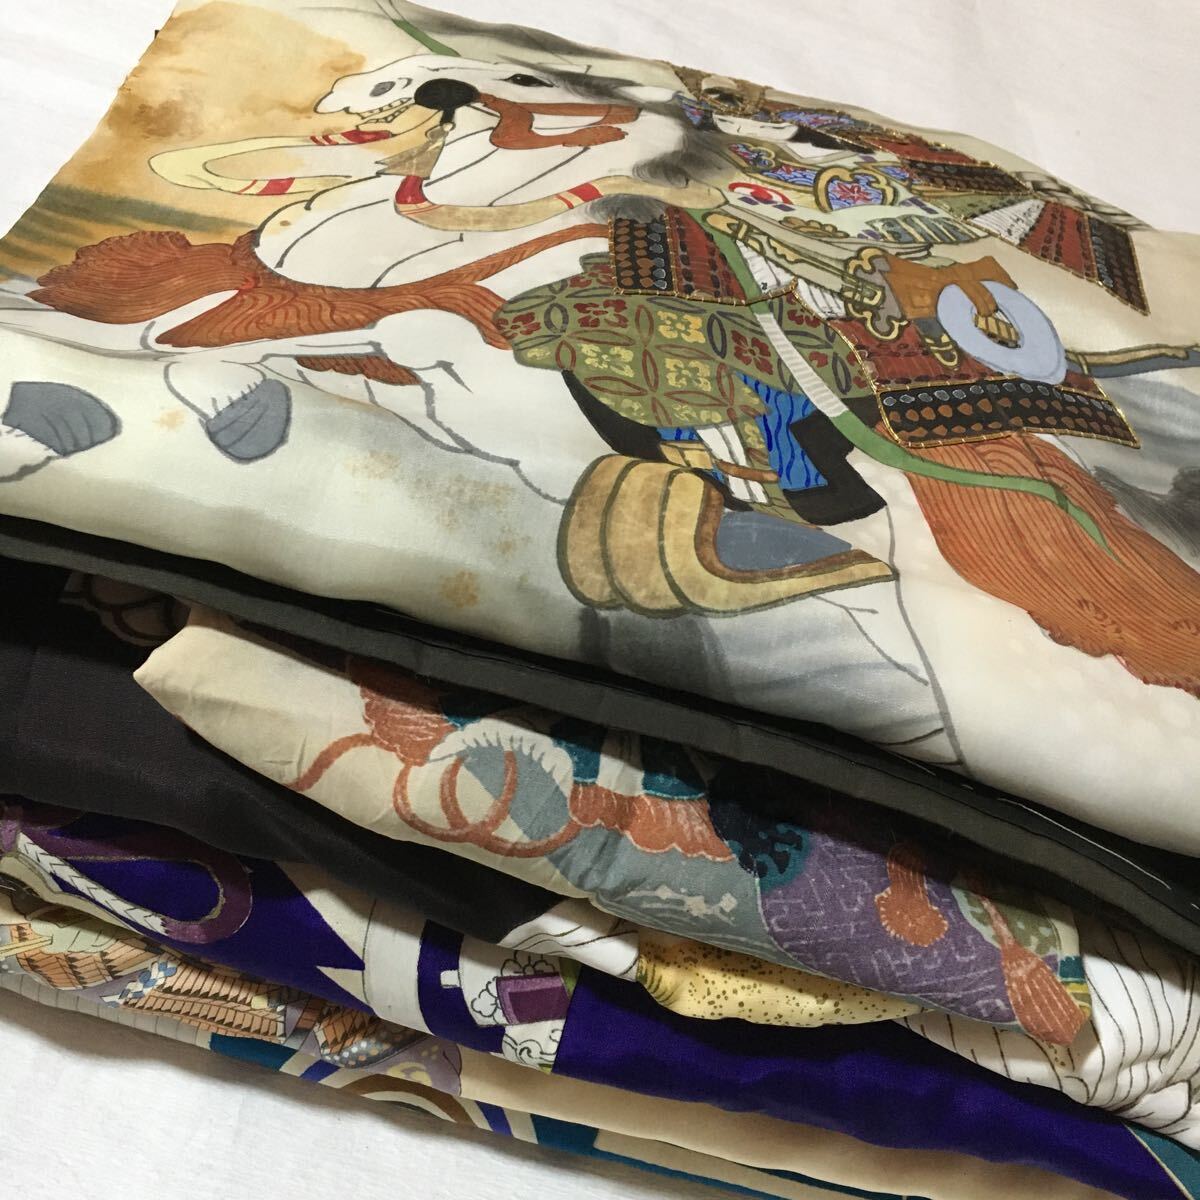  ребенок японский костюм 6 пункт продажа комплектом кимоно 4 крыльев тканый 1 листов длинное нижнее кимоно 1 листов античный мужчина . Ремейк-материал старый ткань материалы различный 